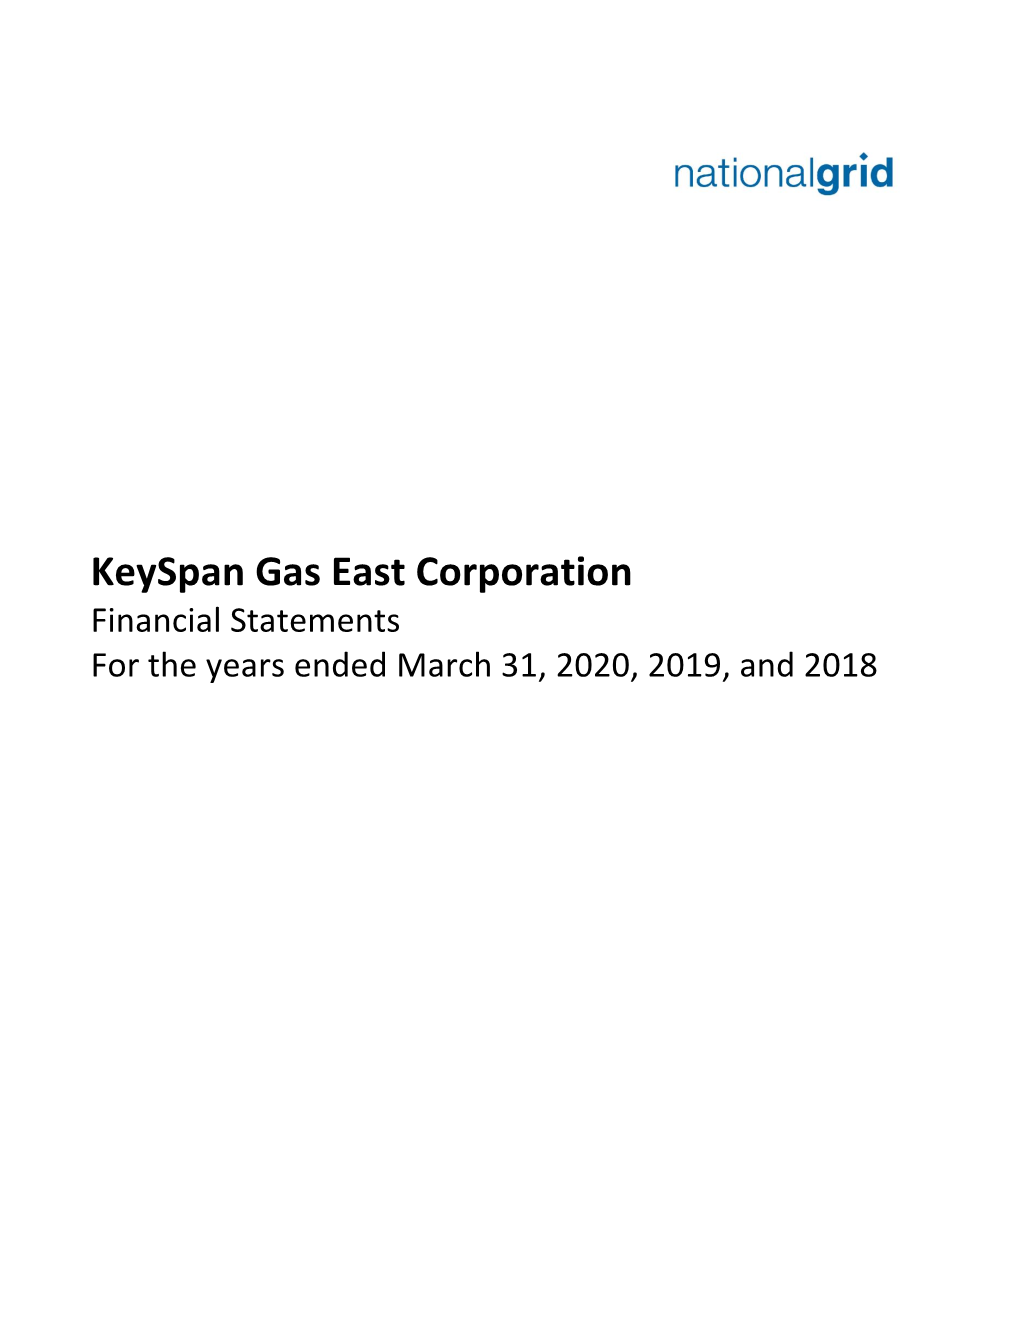 Keyspan Gas East Corporation Financial Statements